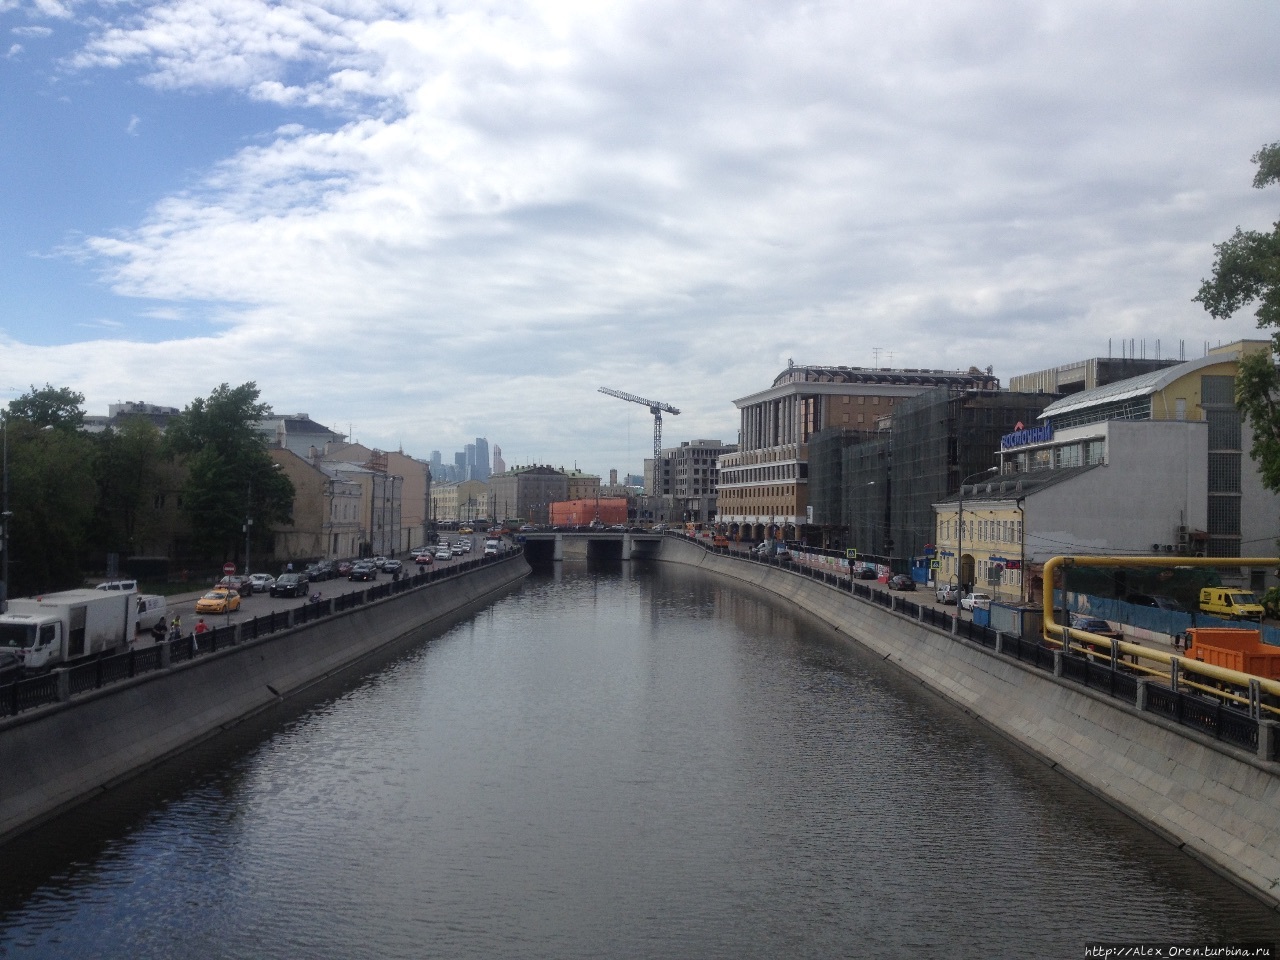 Водоотводный канал, вид с мостика. Москва, Россия